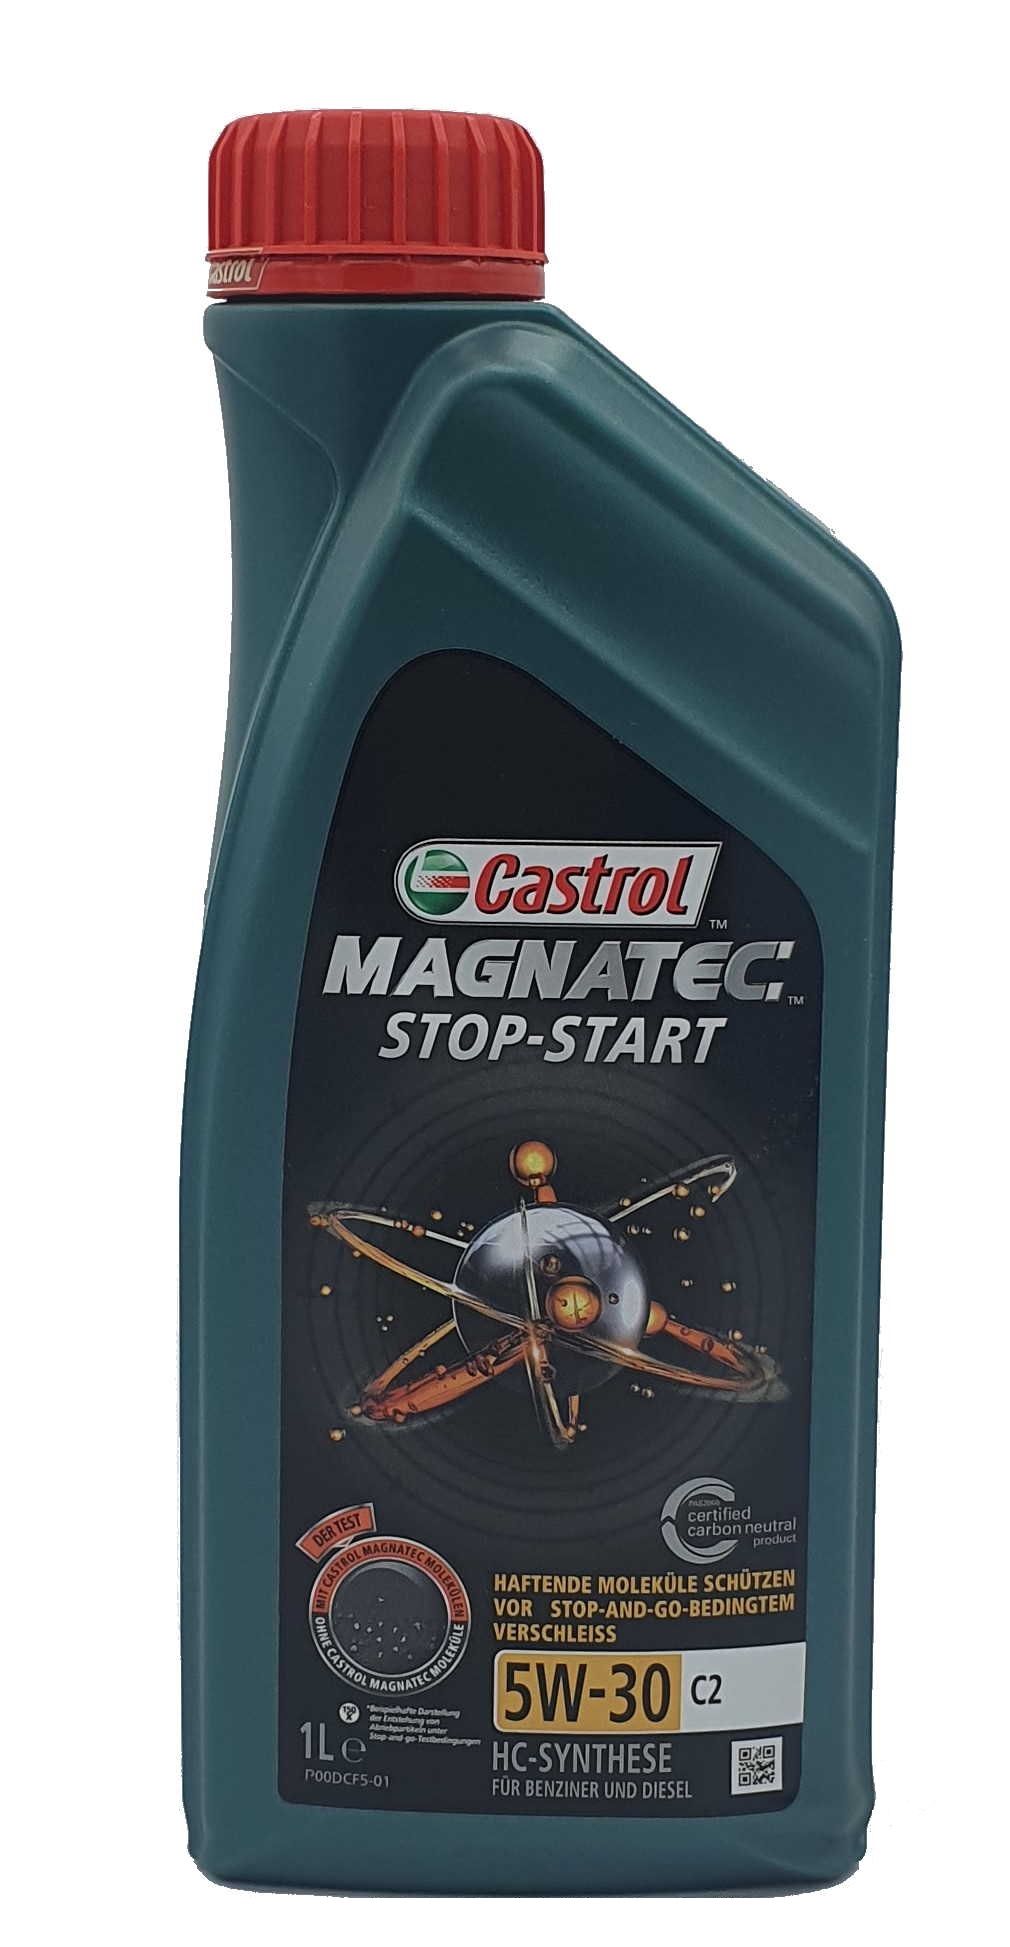 Castrol Magnatec 5W-30 C2 1 Liter